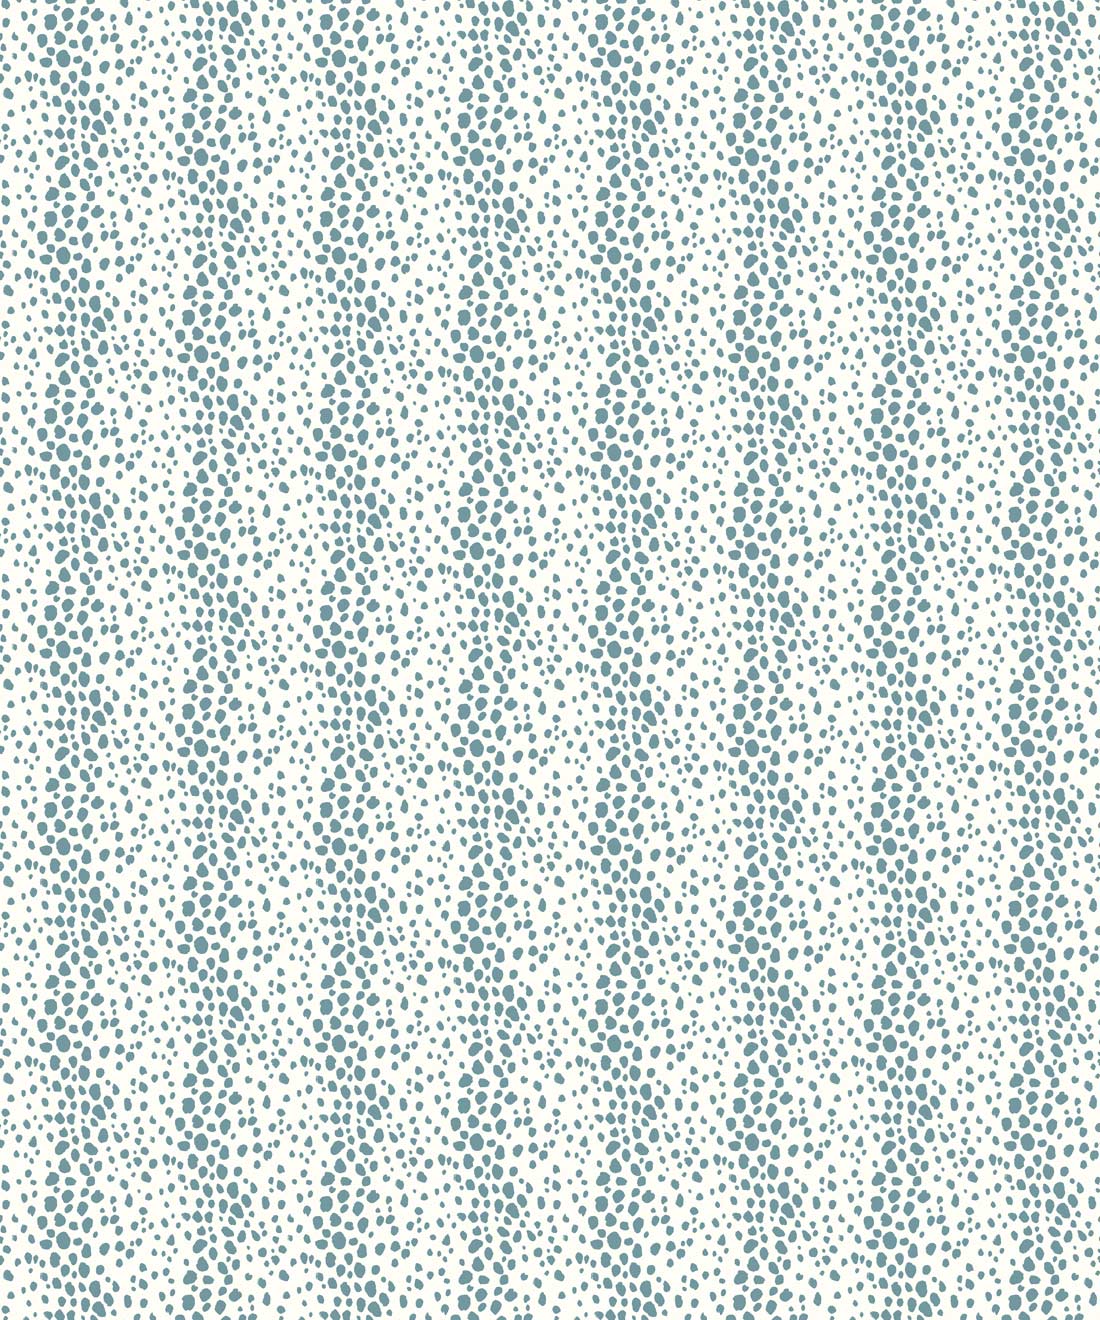 Park Avenue Petite Wallpaper • Dianne Bergeron • Animal Print Wallpaper • Animal Spots Wallpaper • Sea Glass • Swatch